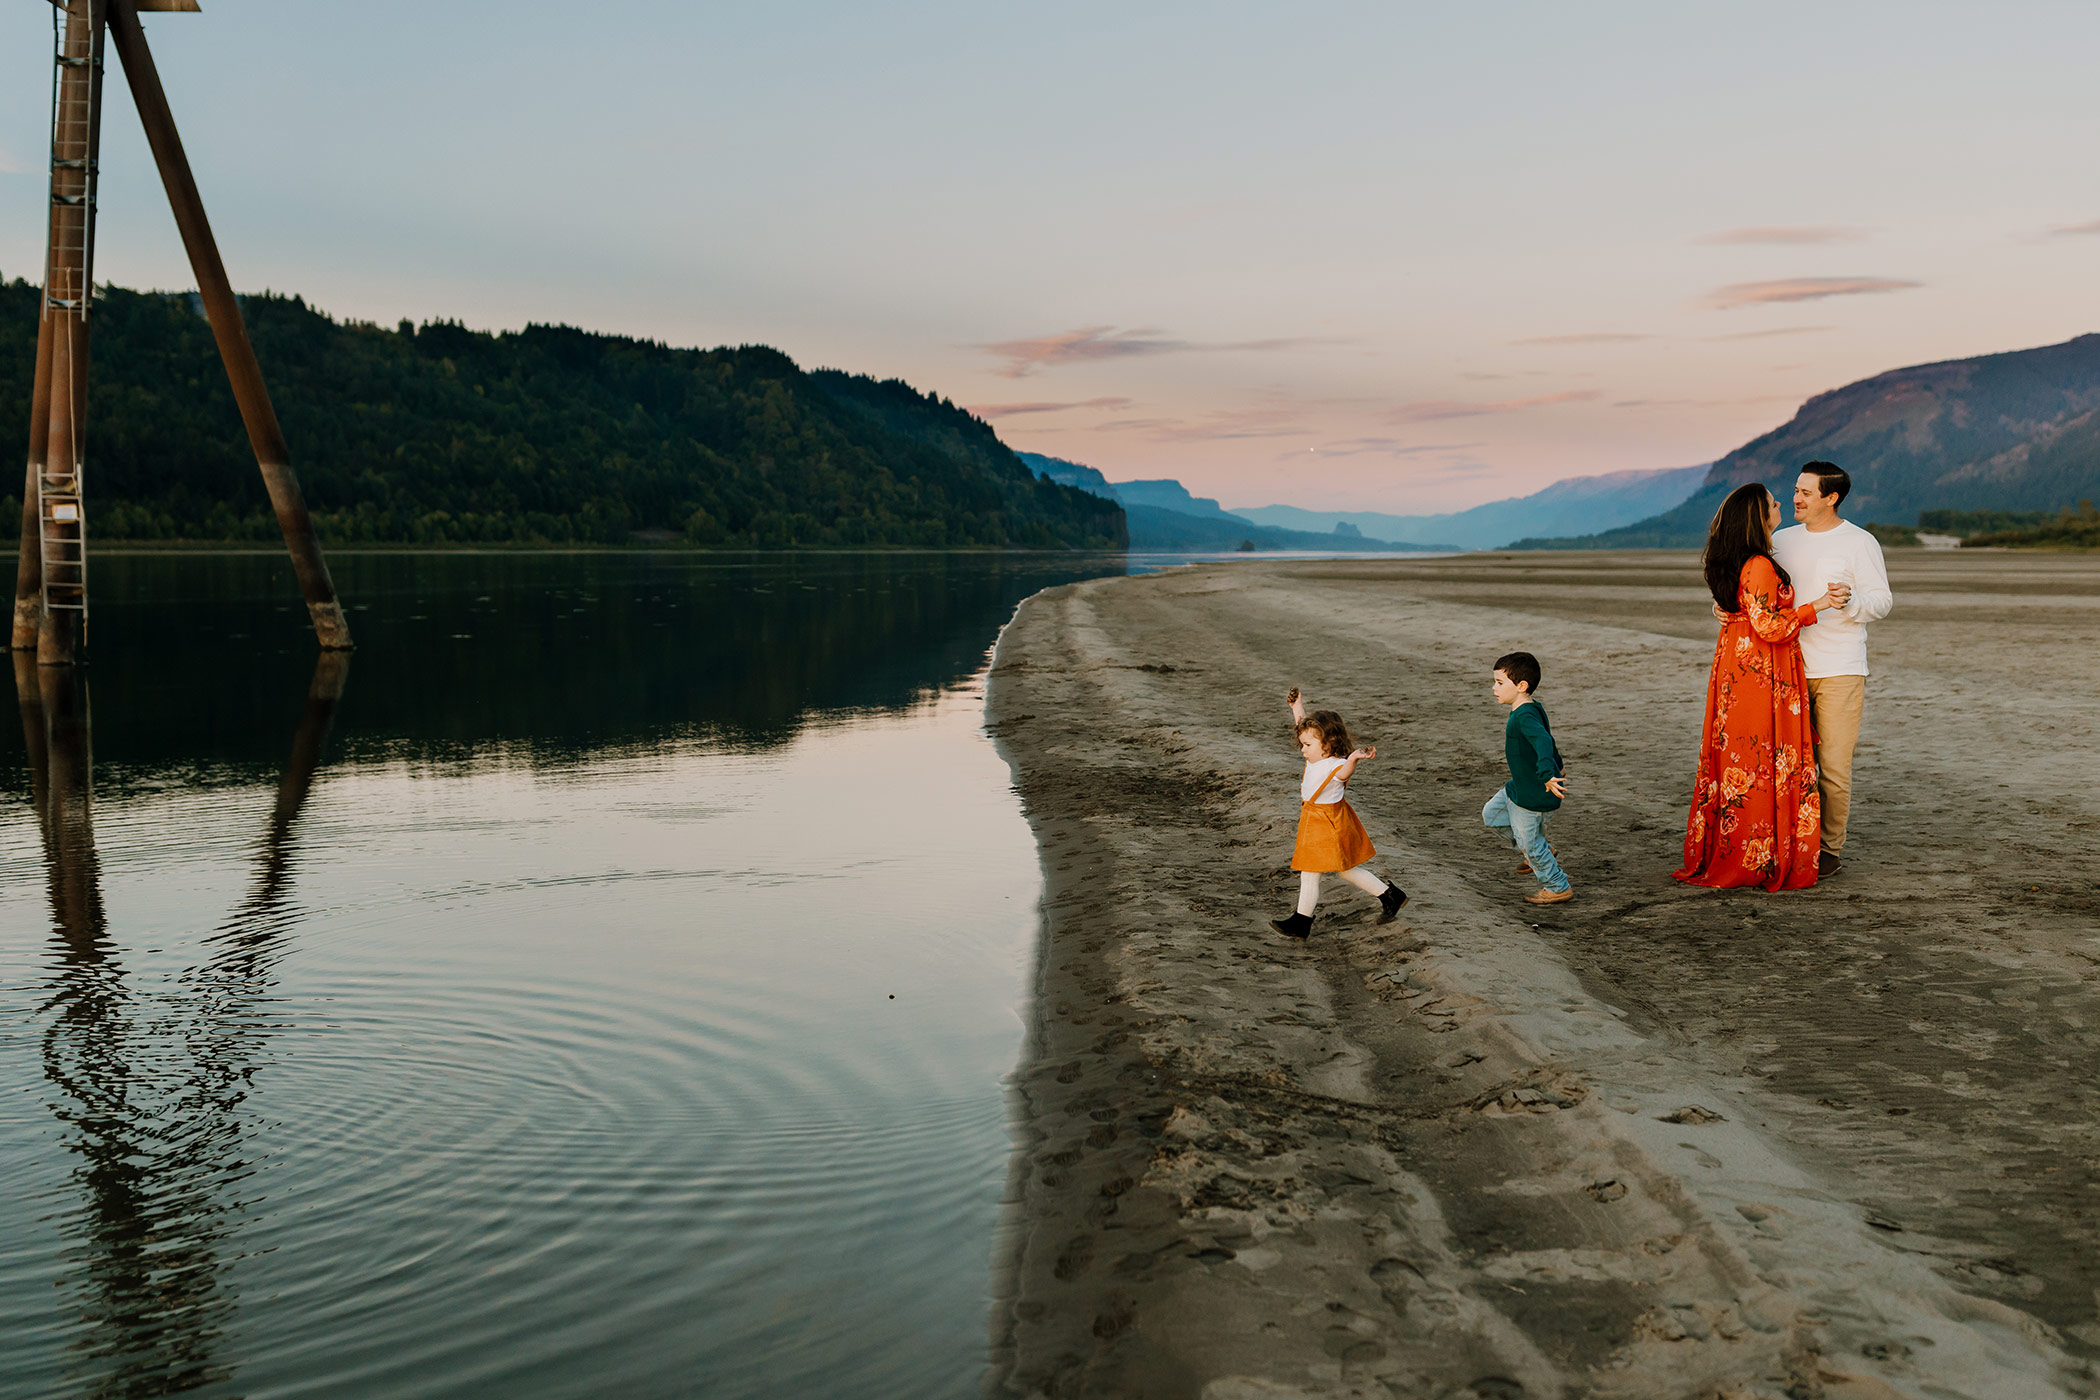 amazing adventure family photo near a river in portland oregon